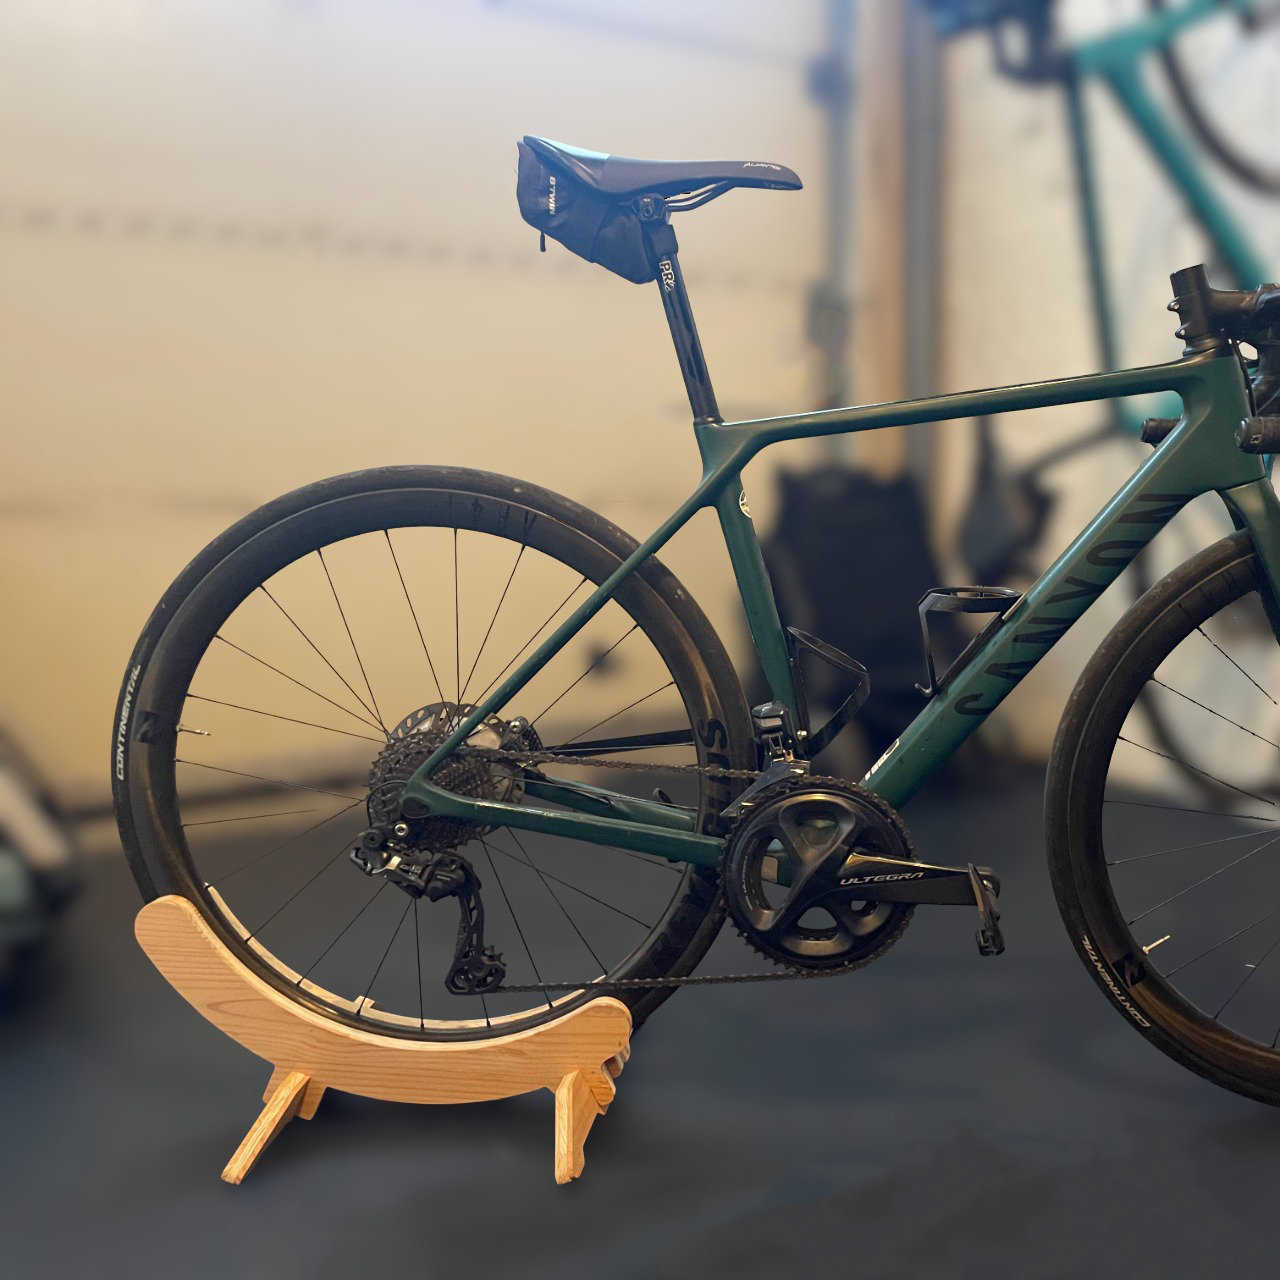 Cavalletto per #bicicletta in legno fai da te pratico e economico